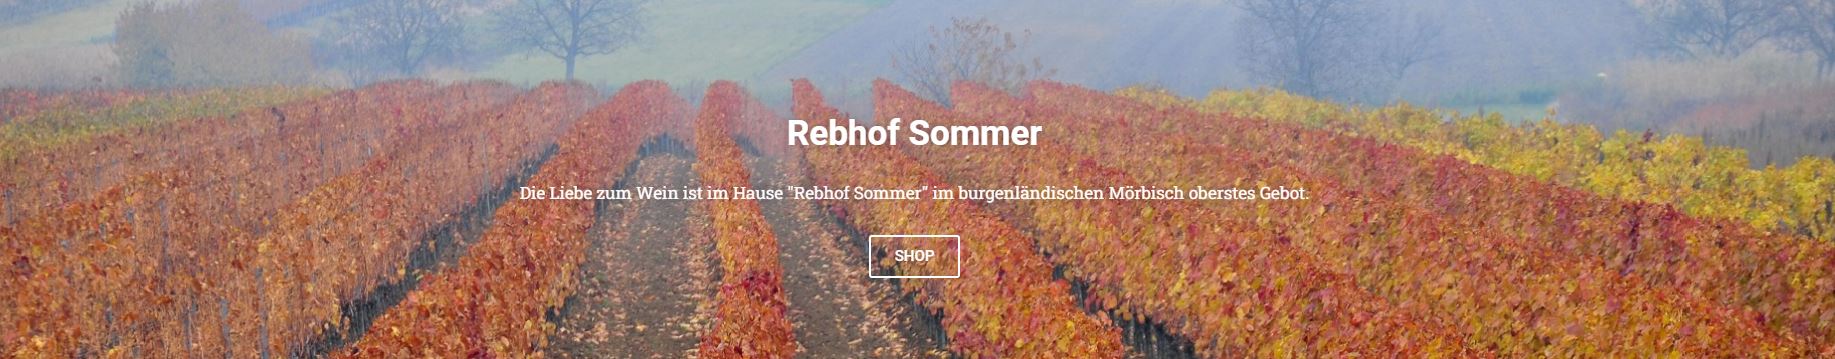 Wein-Sommer-Banner